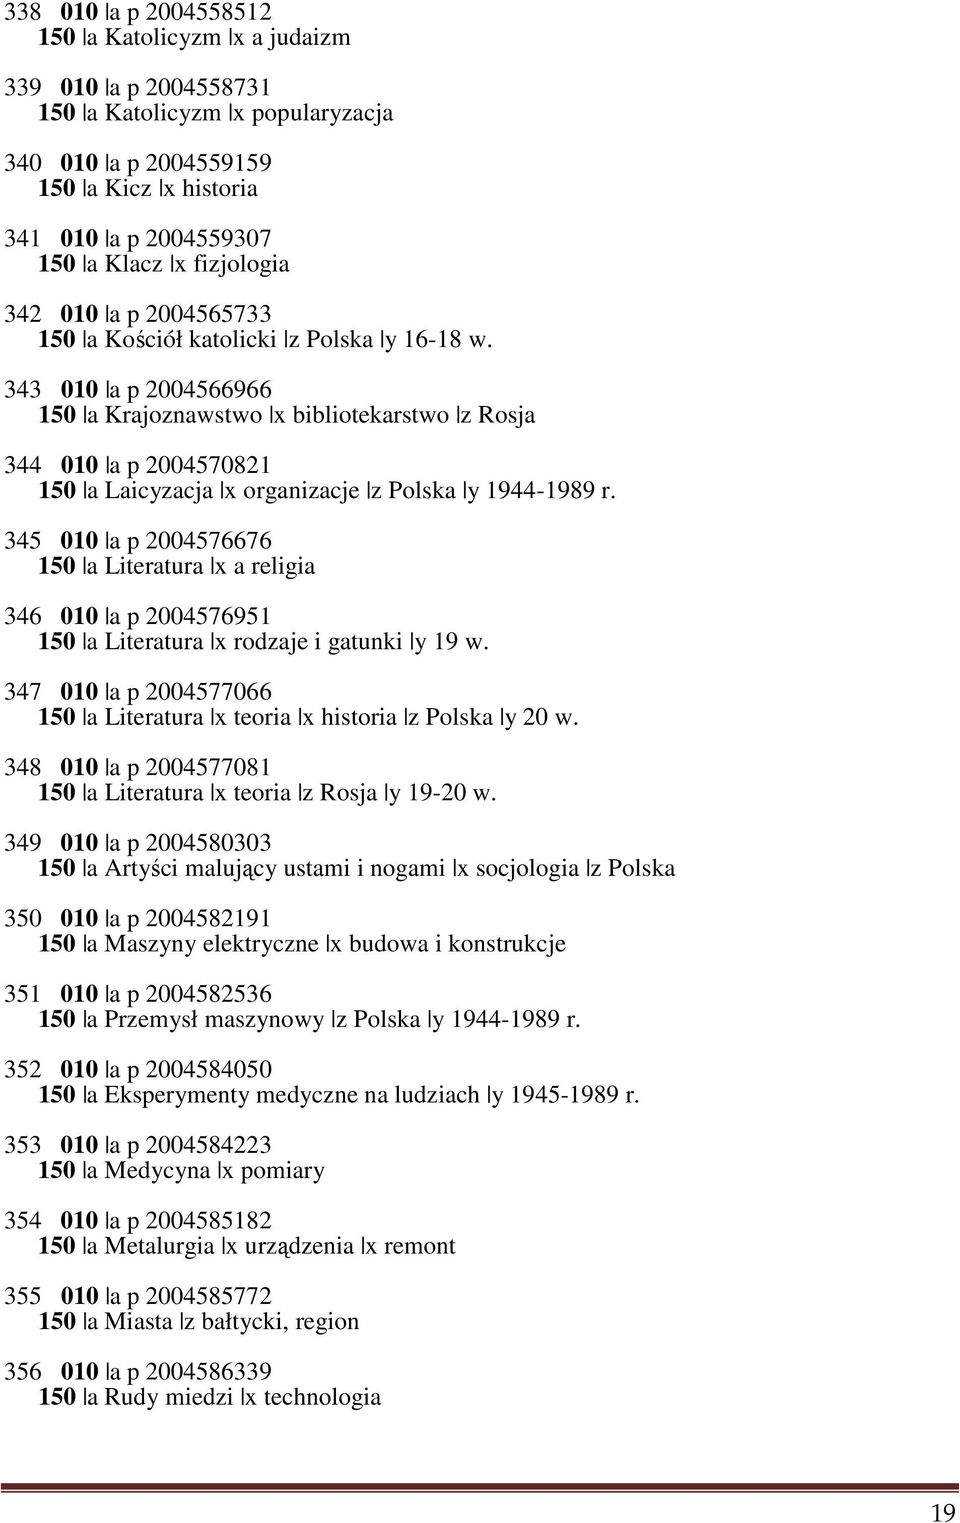 343 010 a p 2004566966 150 a Krajoznawstwo x bibliotekarstwo z Rosja 344 010 a p 2004570821 150 a Laicyzacja x organizacje z Polska y 1944-1989 r.